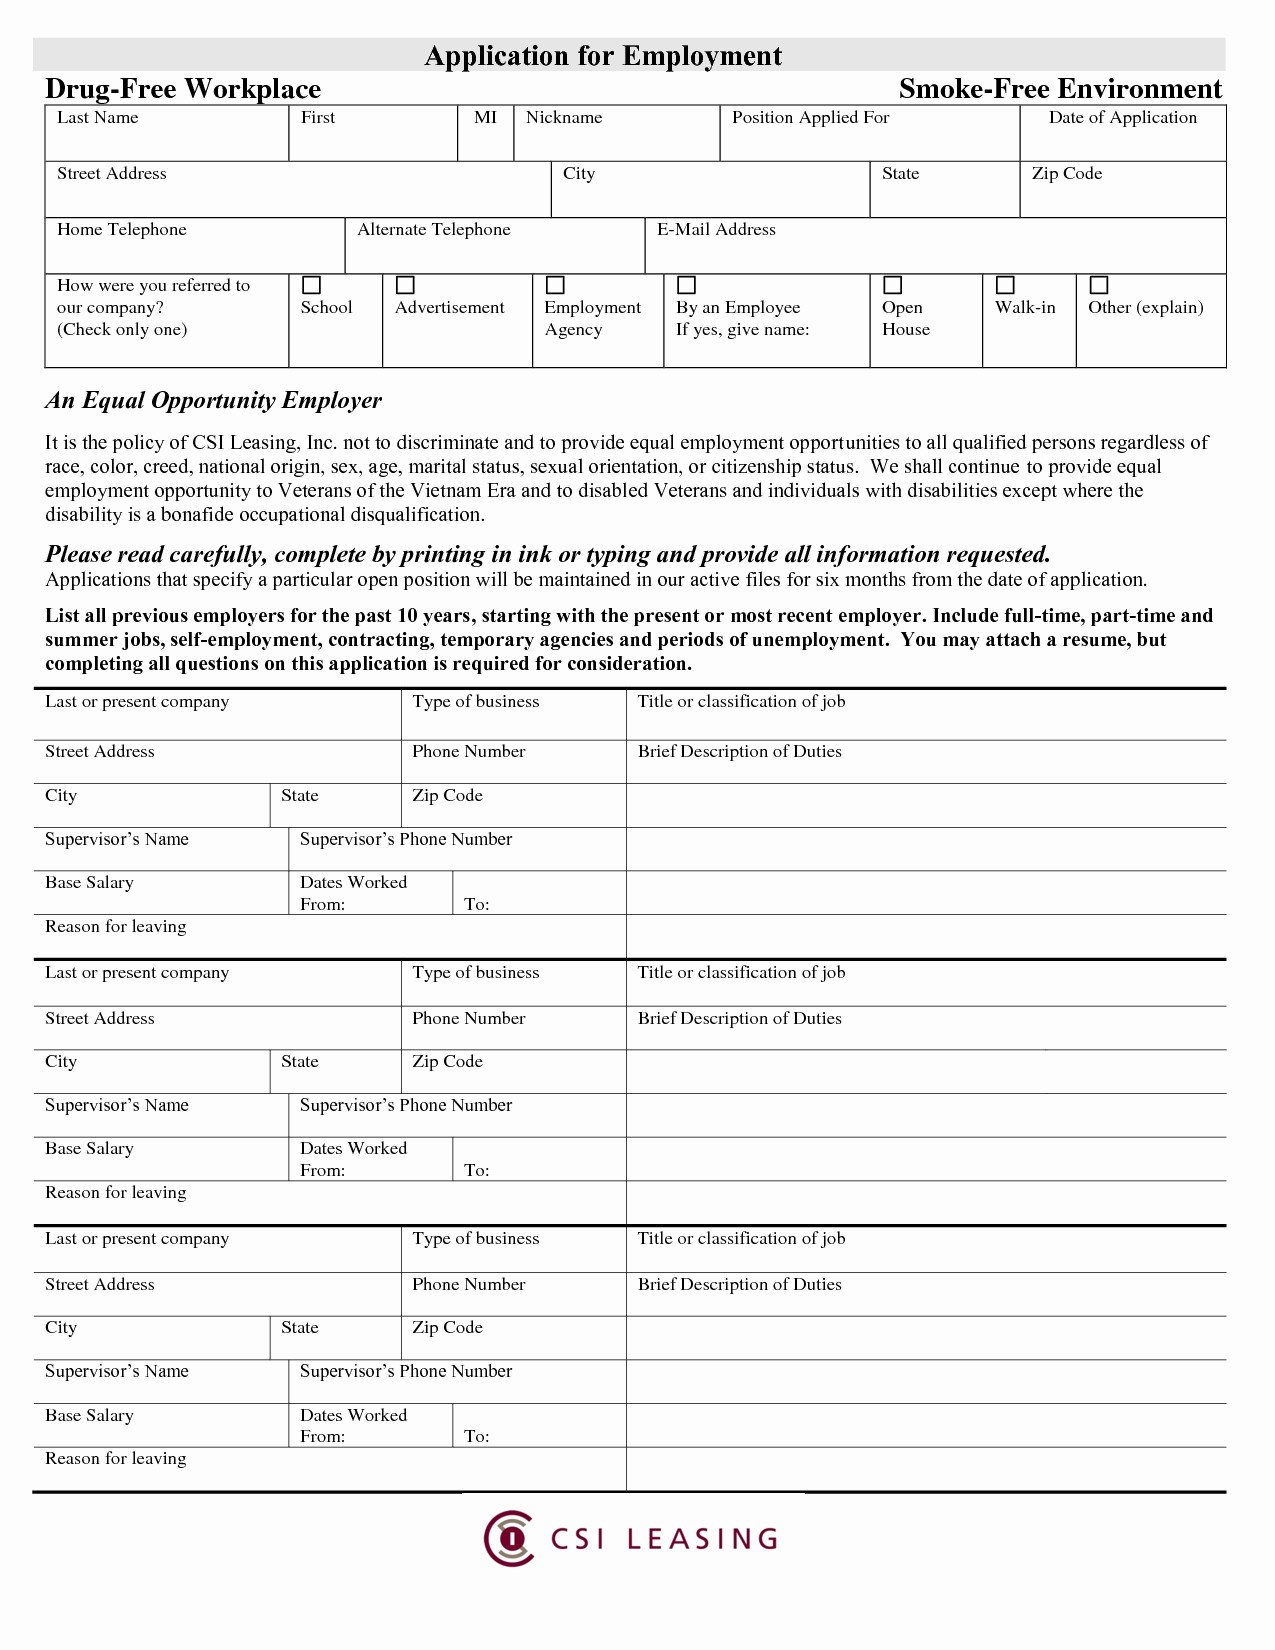 Free Blank Employment Application form Fresh Application Blank Job Application form